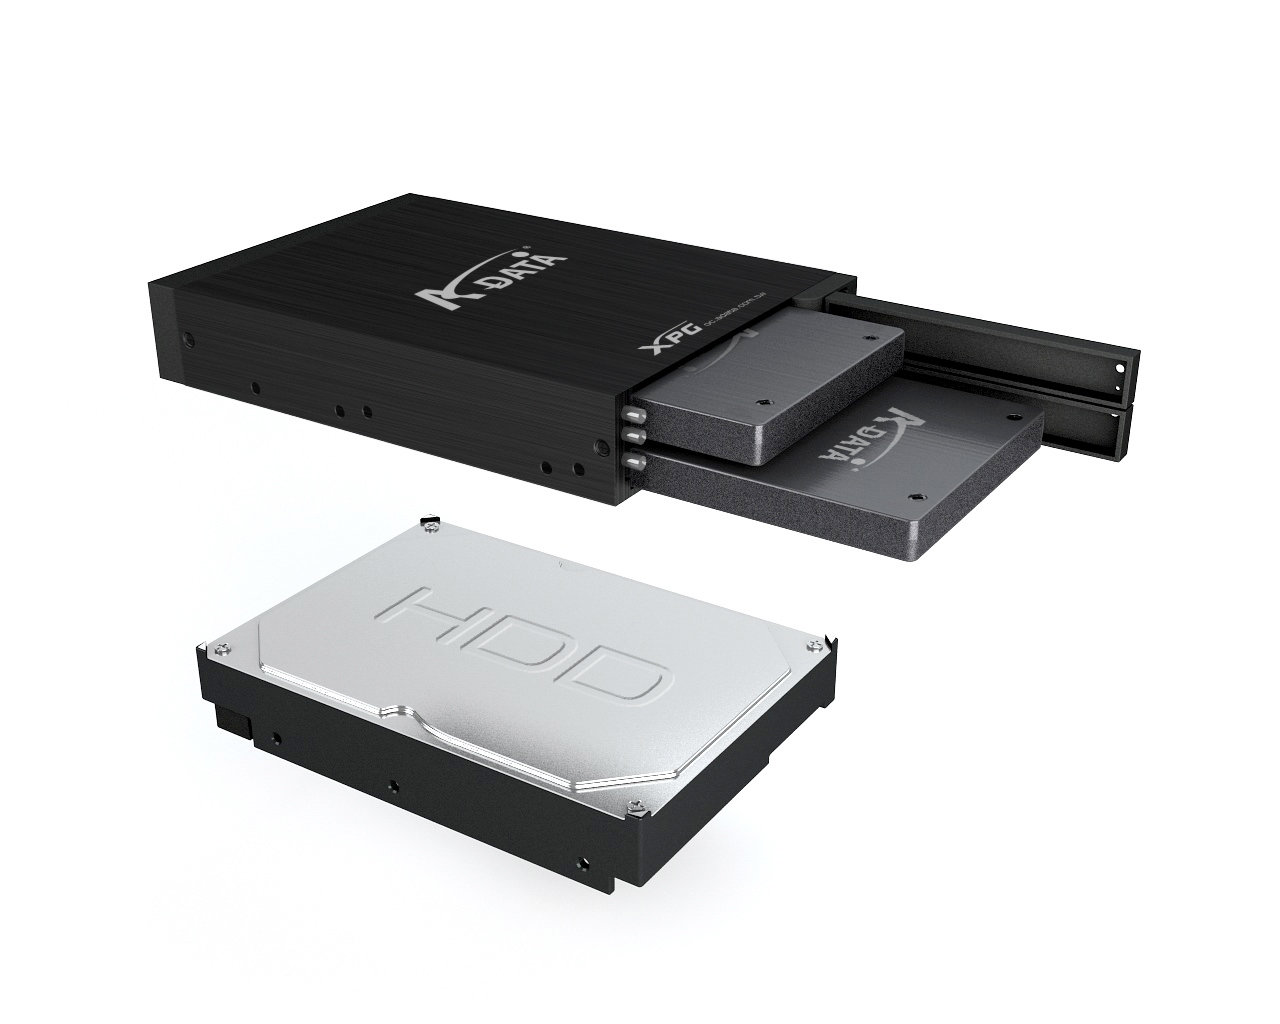 A-Data XPG Dual SSD 3.5” RAID Enclosure